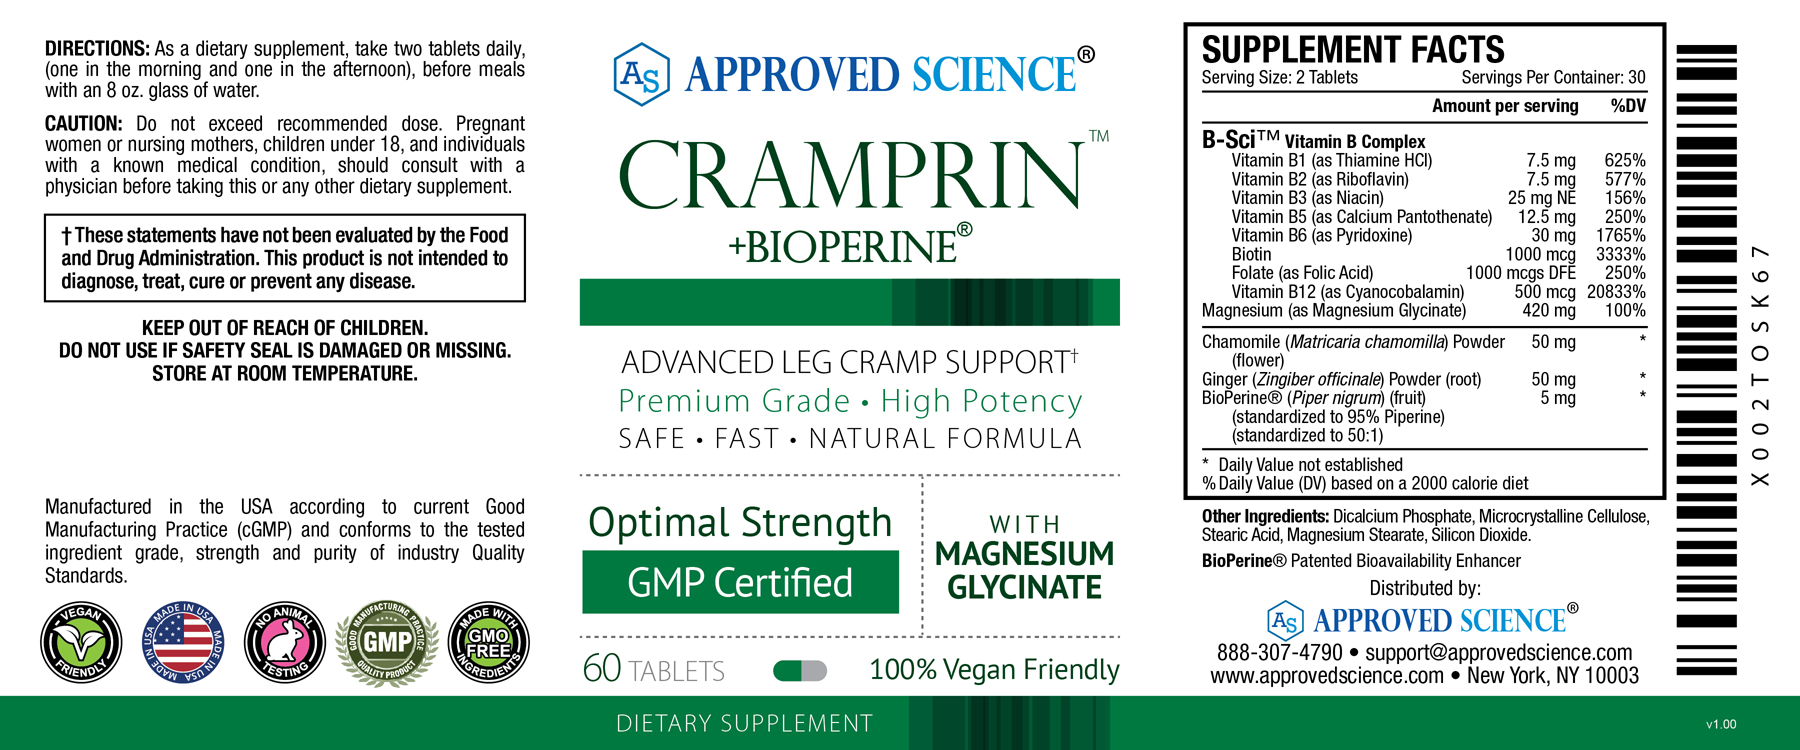 Cramprin™ Supplement Facts